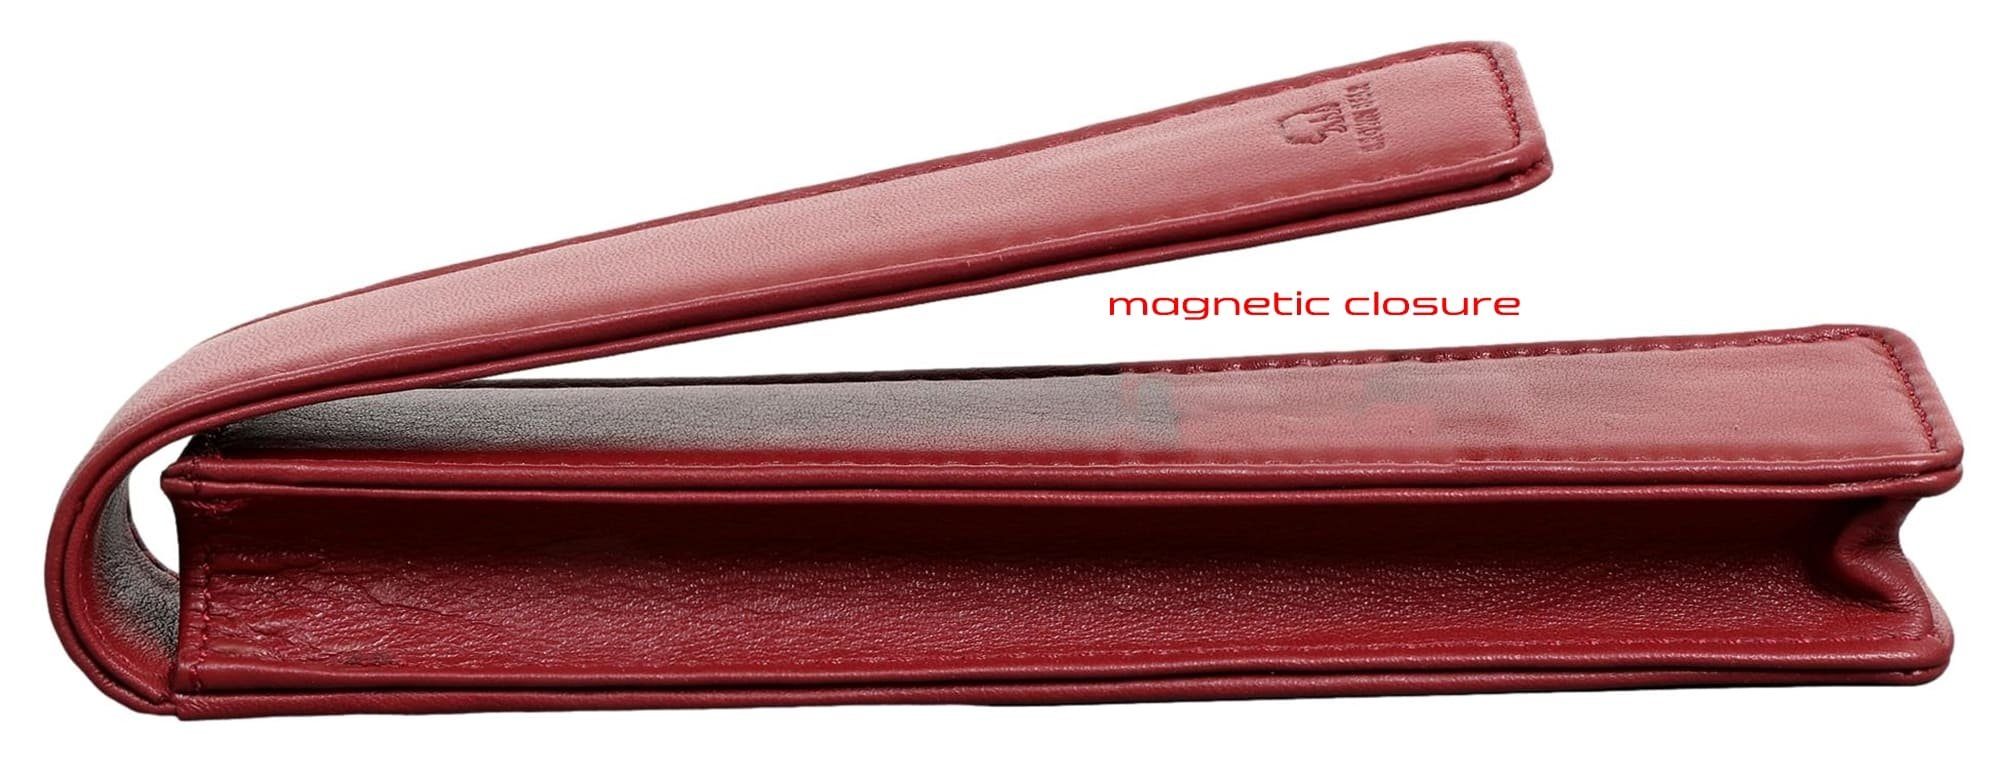 Brown Bear Fülleretui Damen - für Echtleder Magnetverschluss mit 01 Schreibgeräteetui Rot Stift, einen Golf für aus